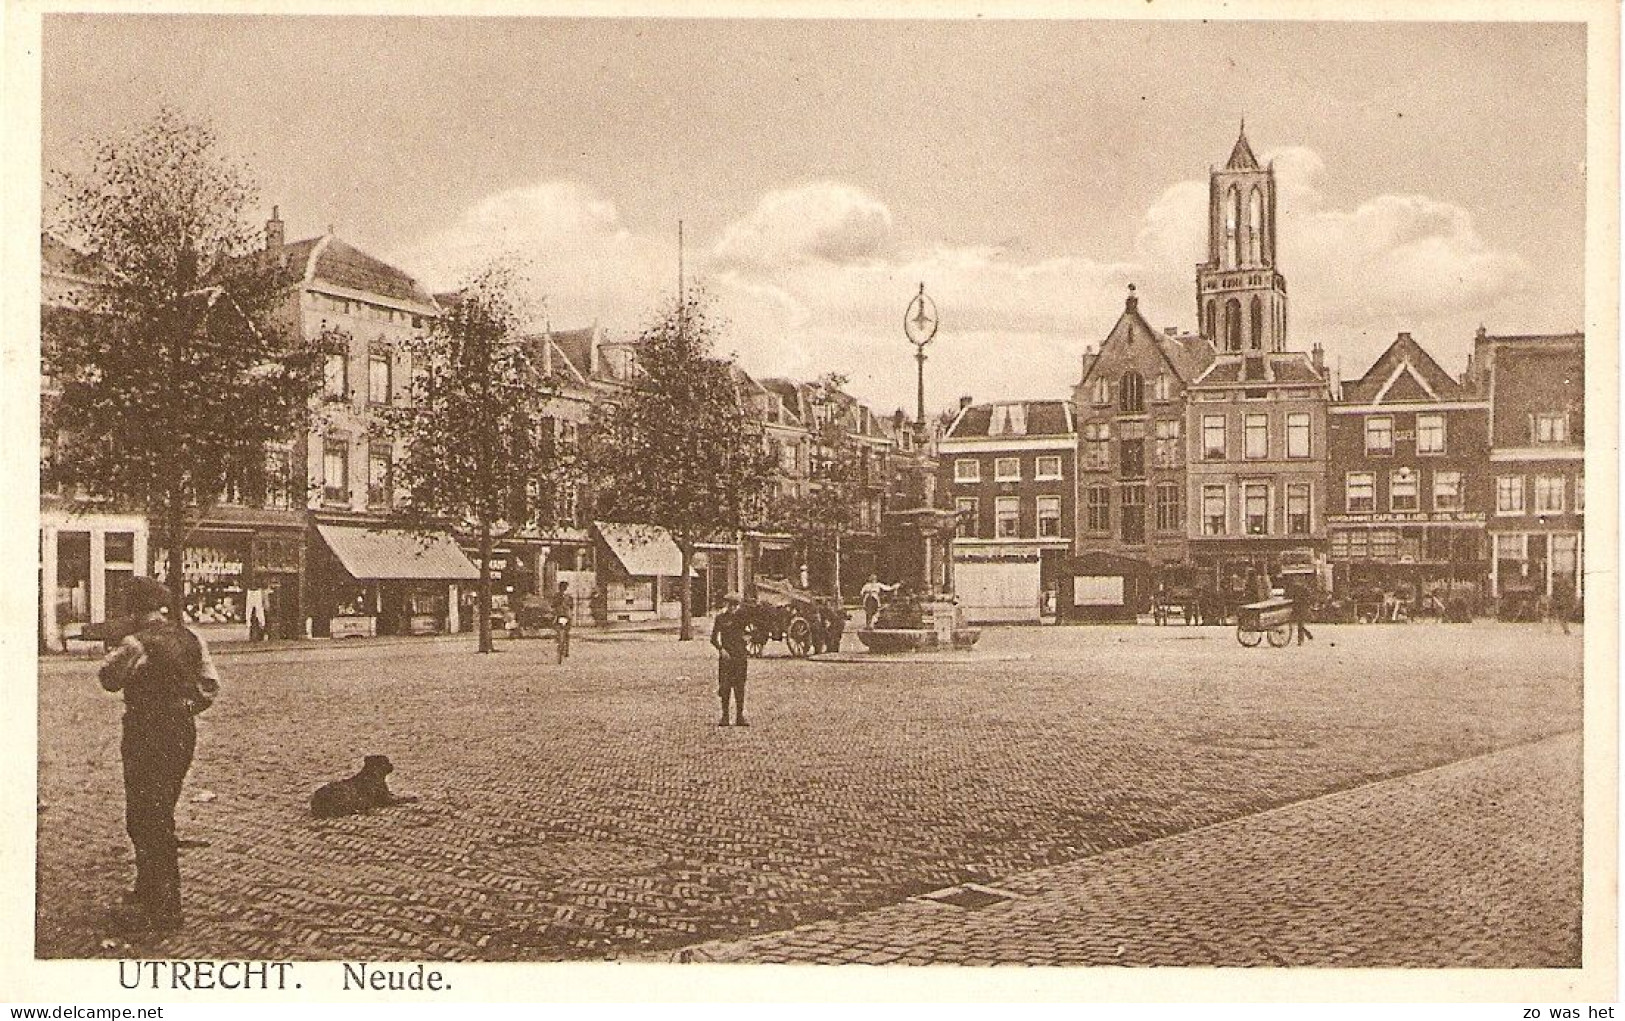 Utrecht, Neude - Utrecht